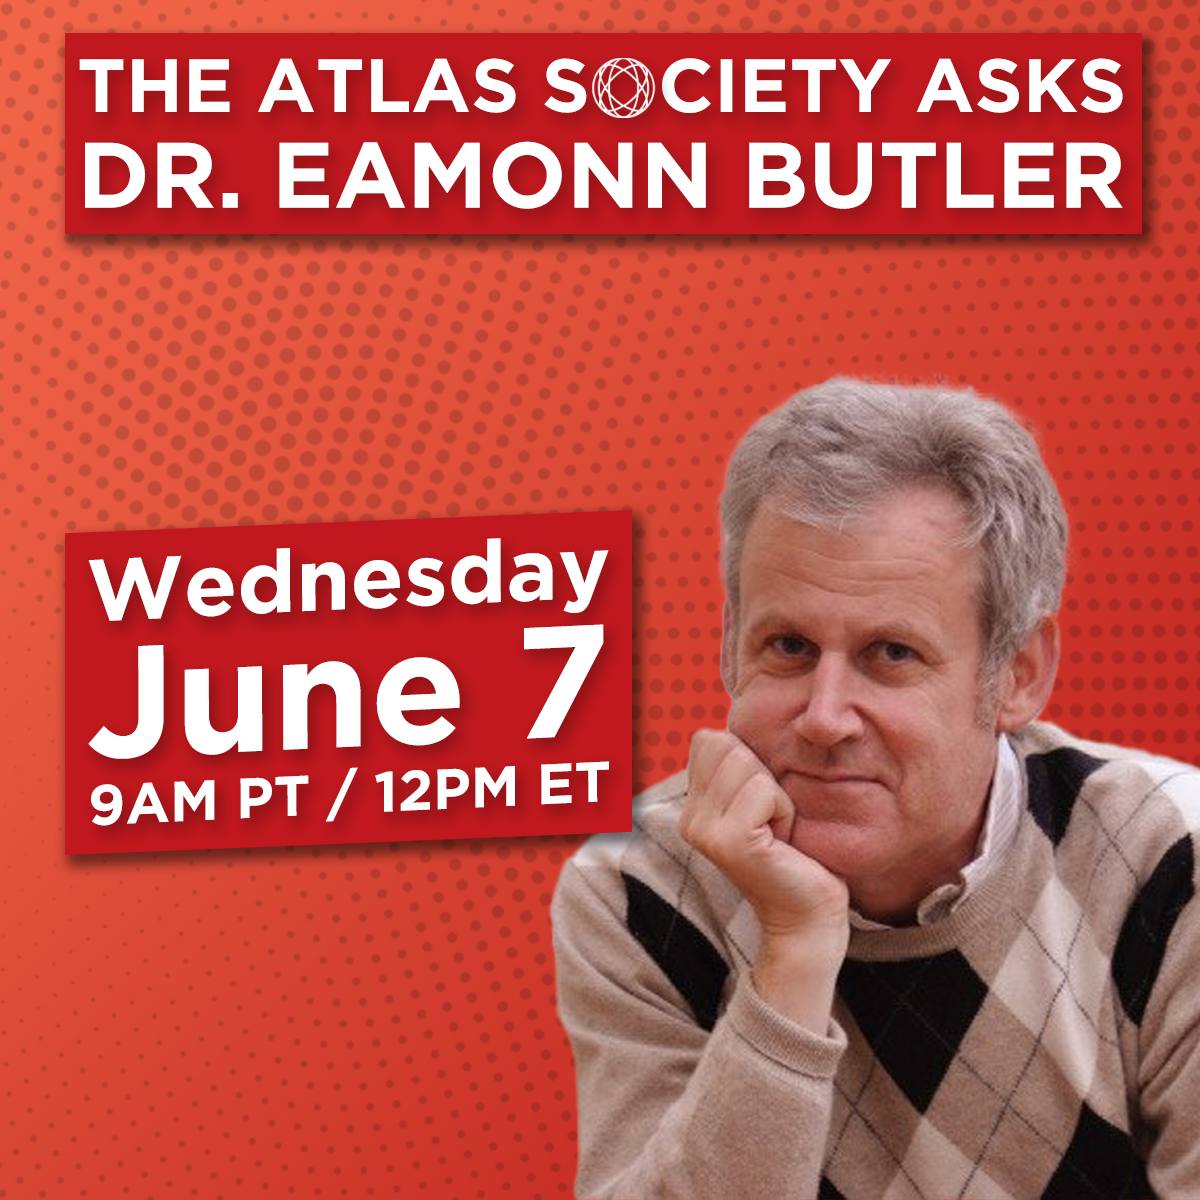 The Atlas Society Asks Dr. Eamonn Butler